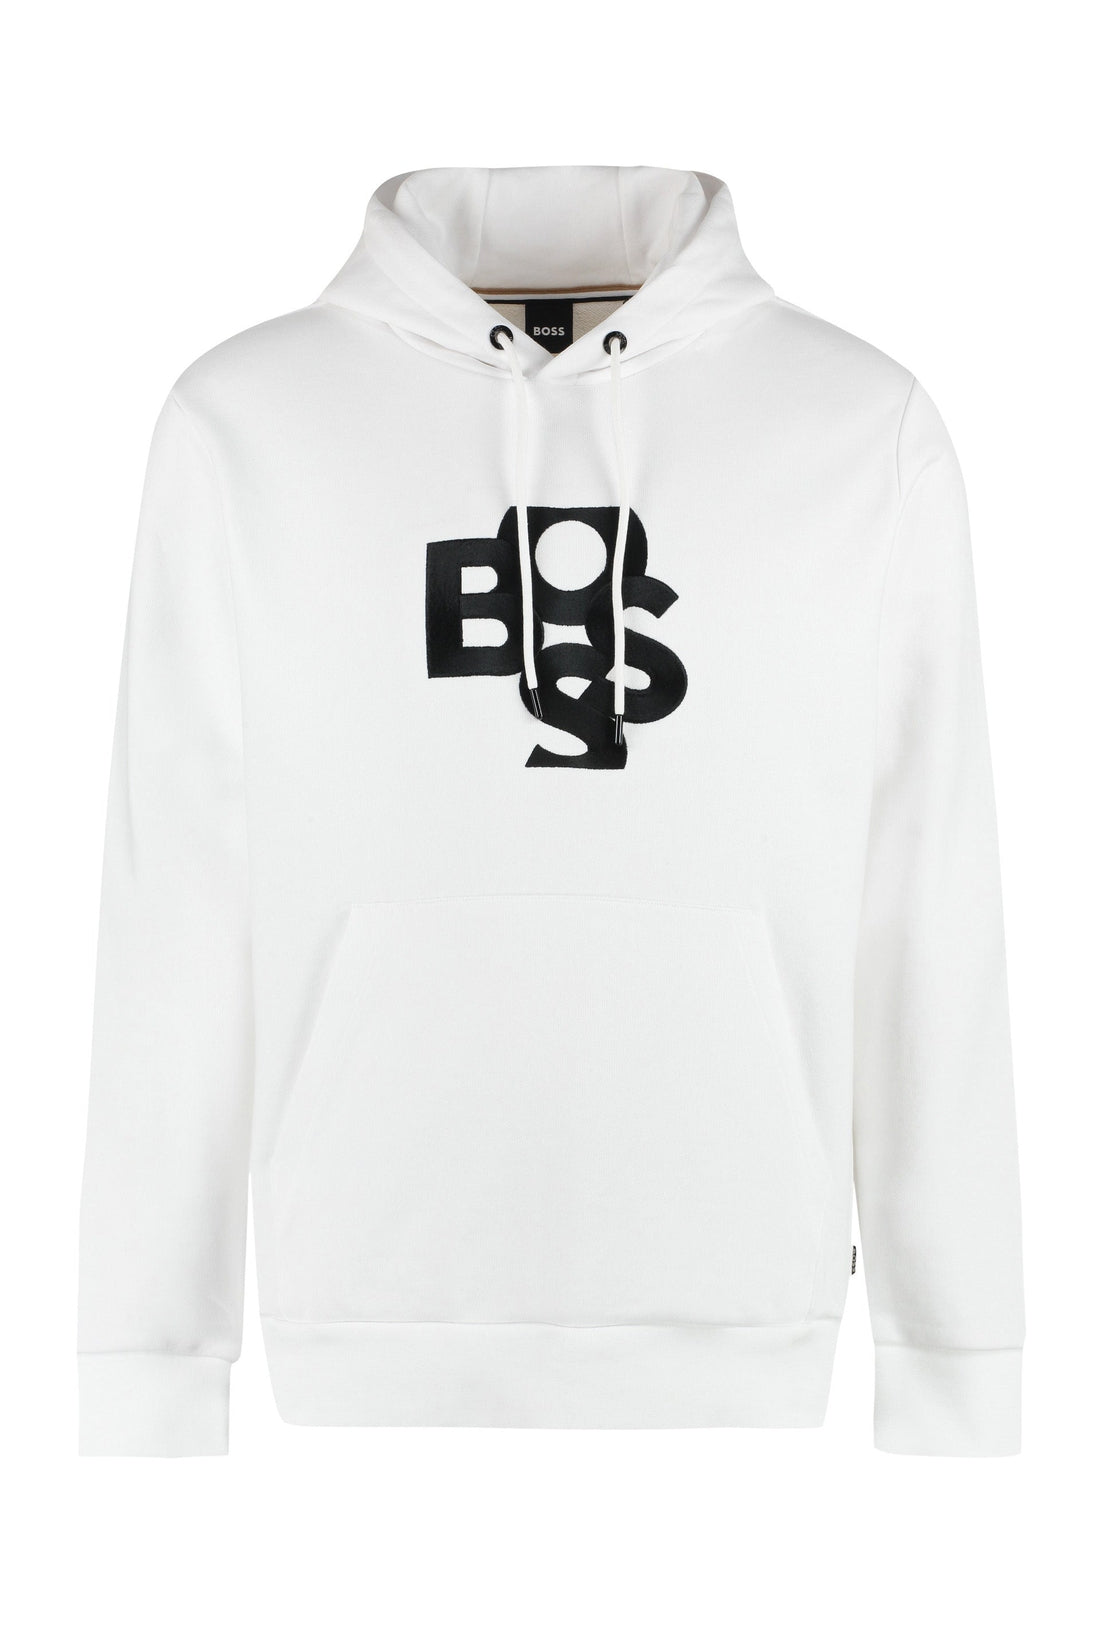 BOSS-OUTLET-SALE-Logo cotton hoodie-ARCHIVIST